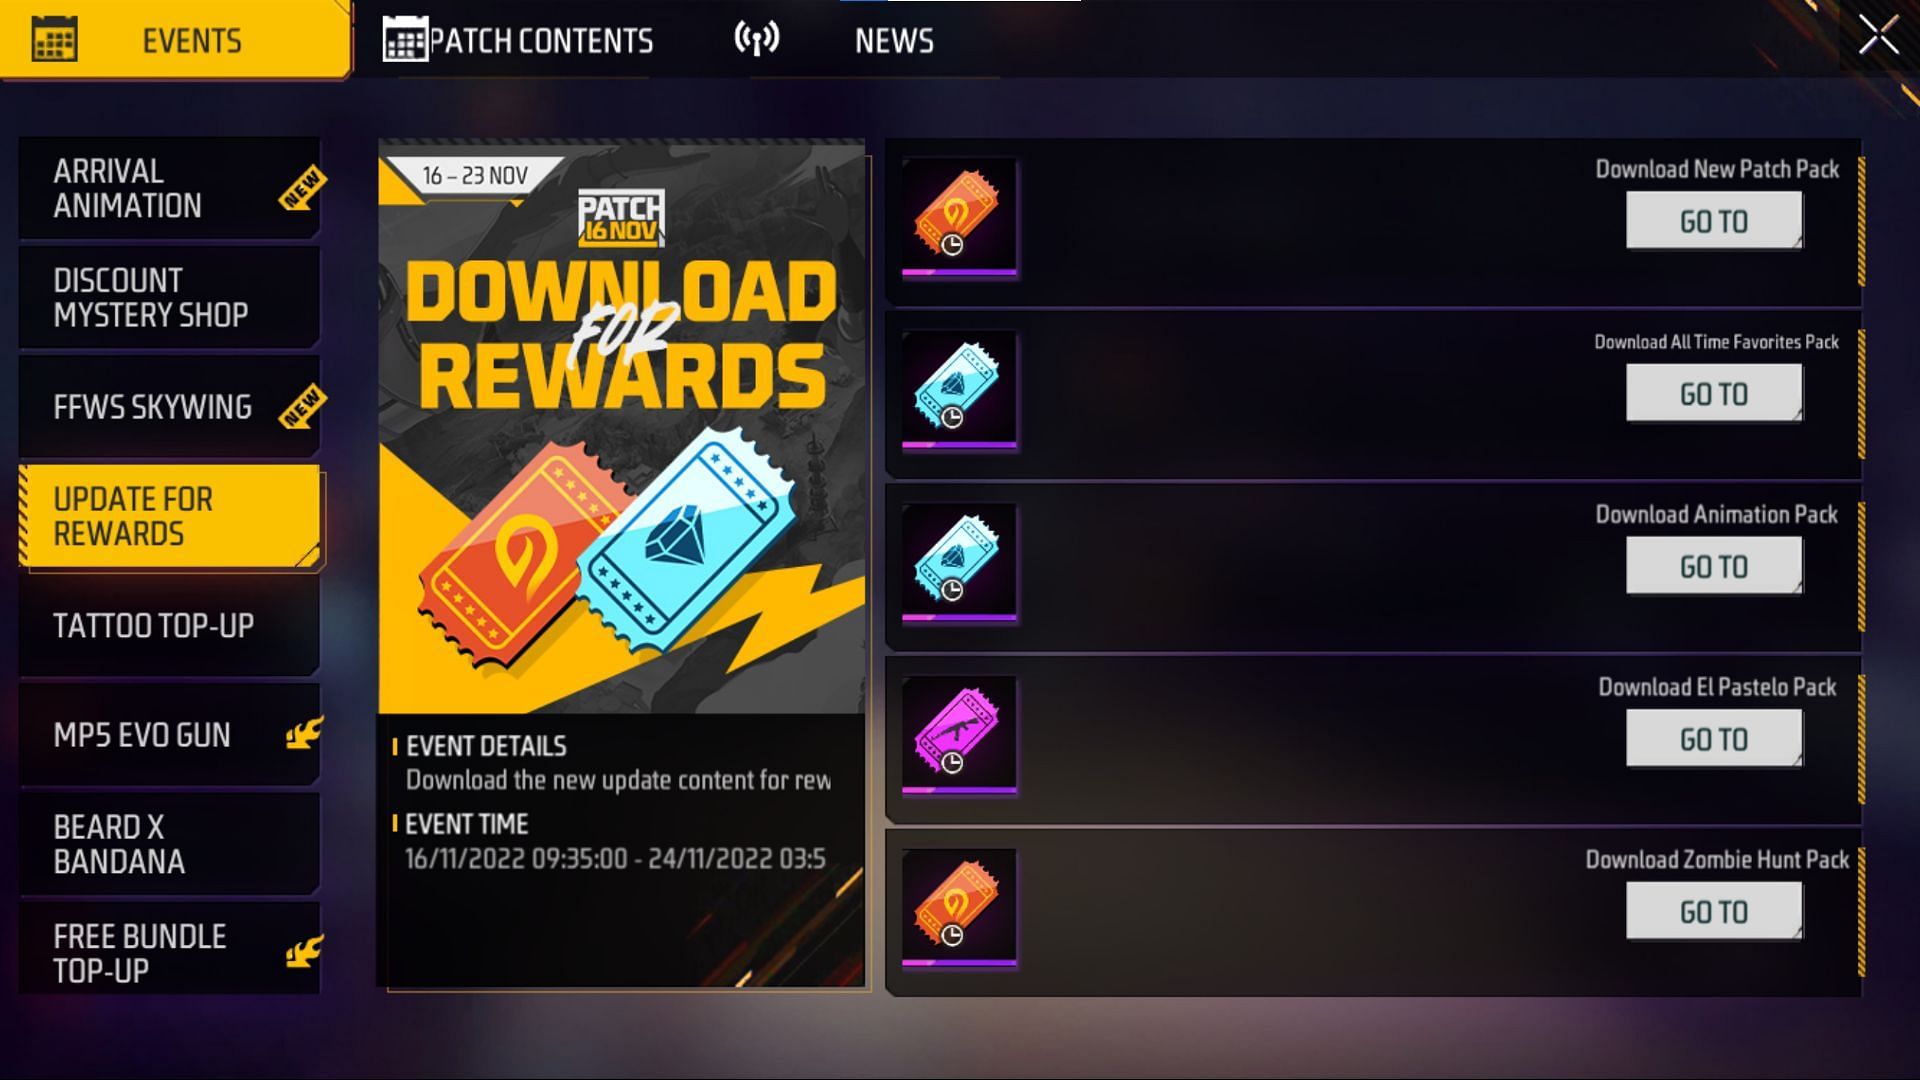 Update for Rewards (Image via Garena)